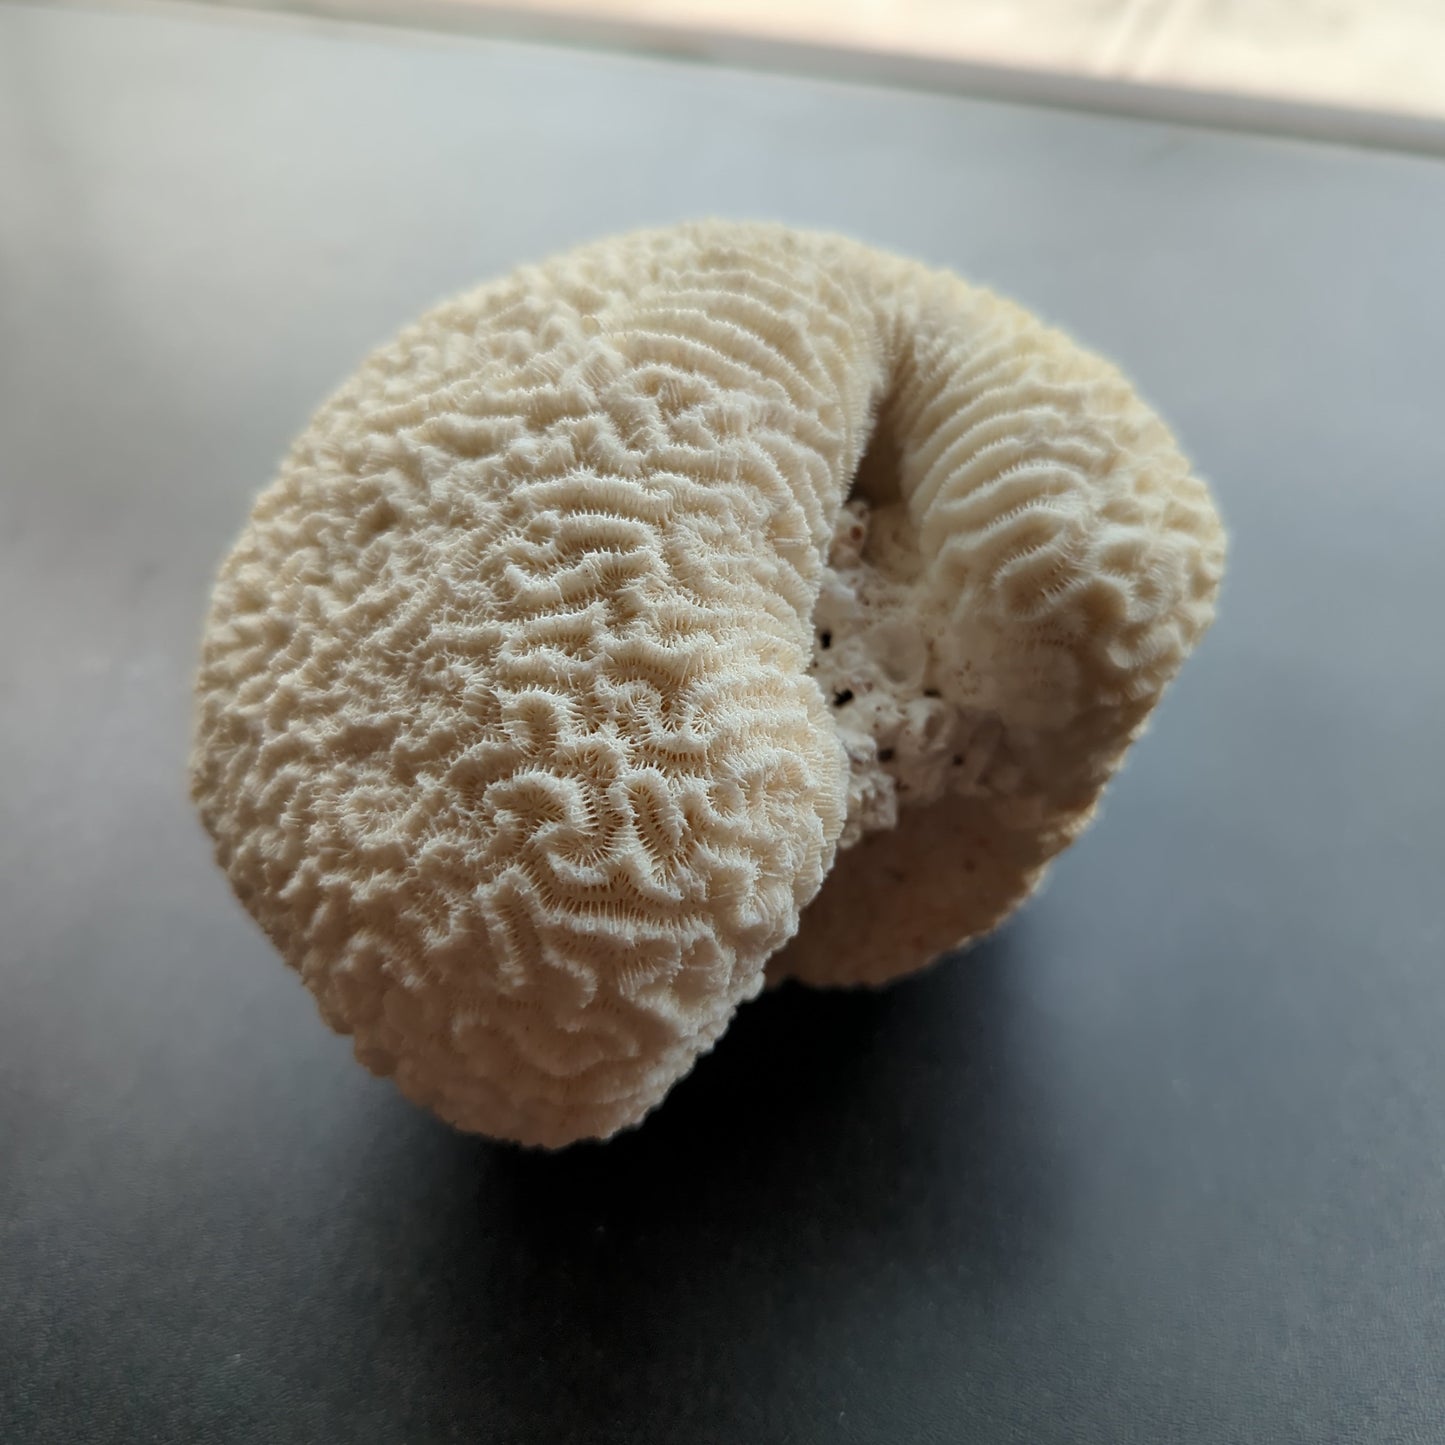 Brain Coral 6"D